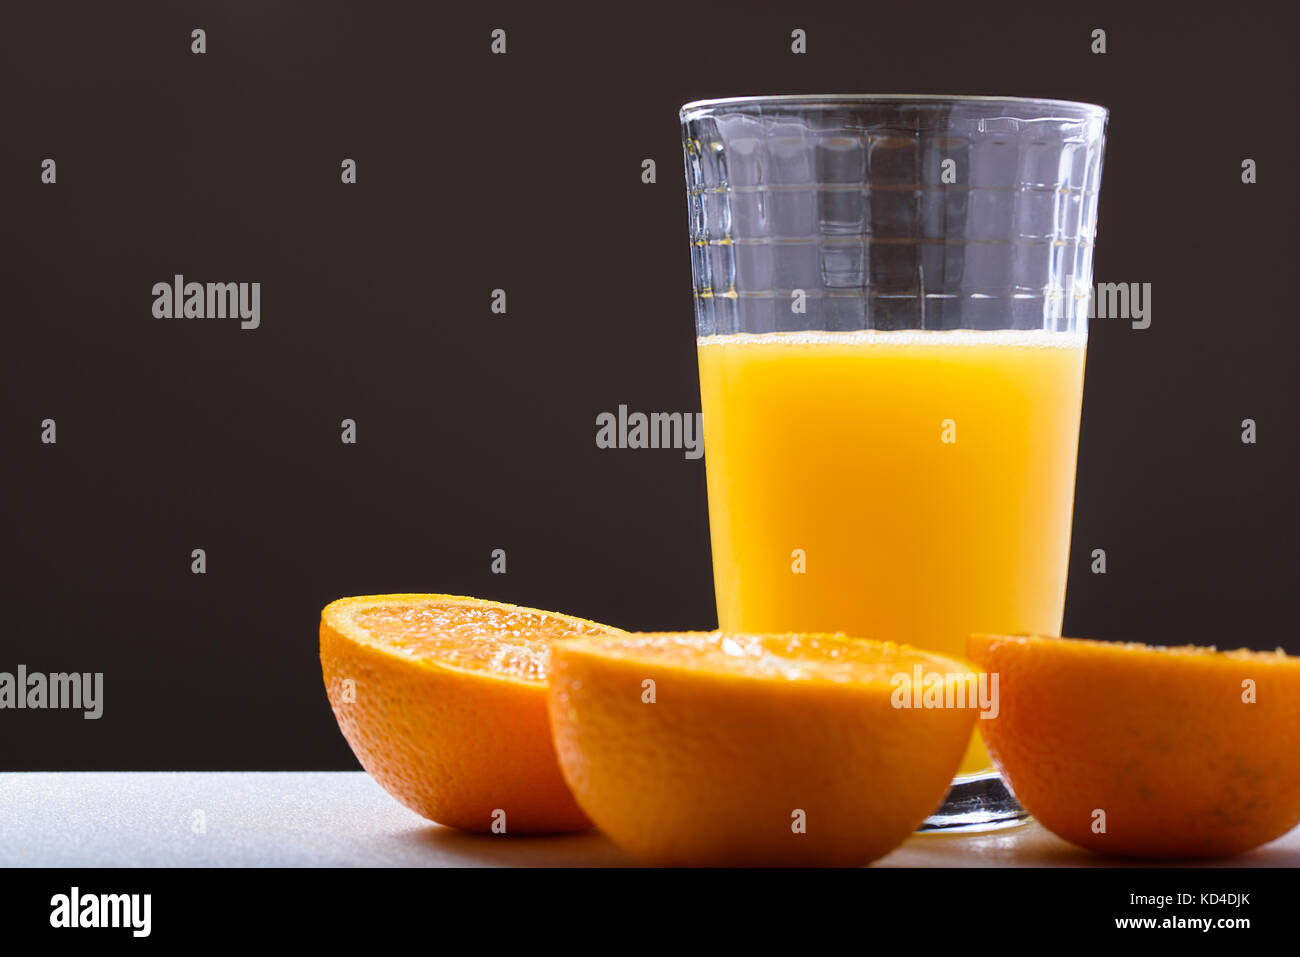 Vaso de jugo de naranja fresco junto con las mitades de naranja sobre un fondo oscuro, vista lateral Foto de stock